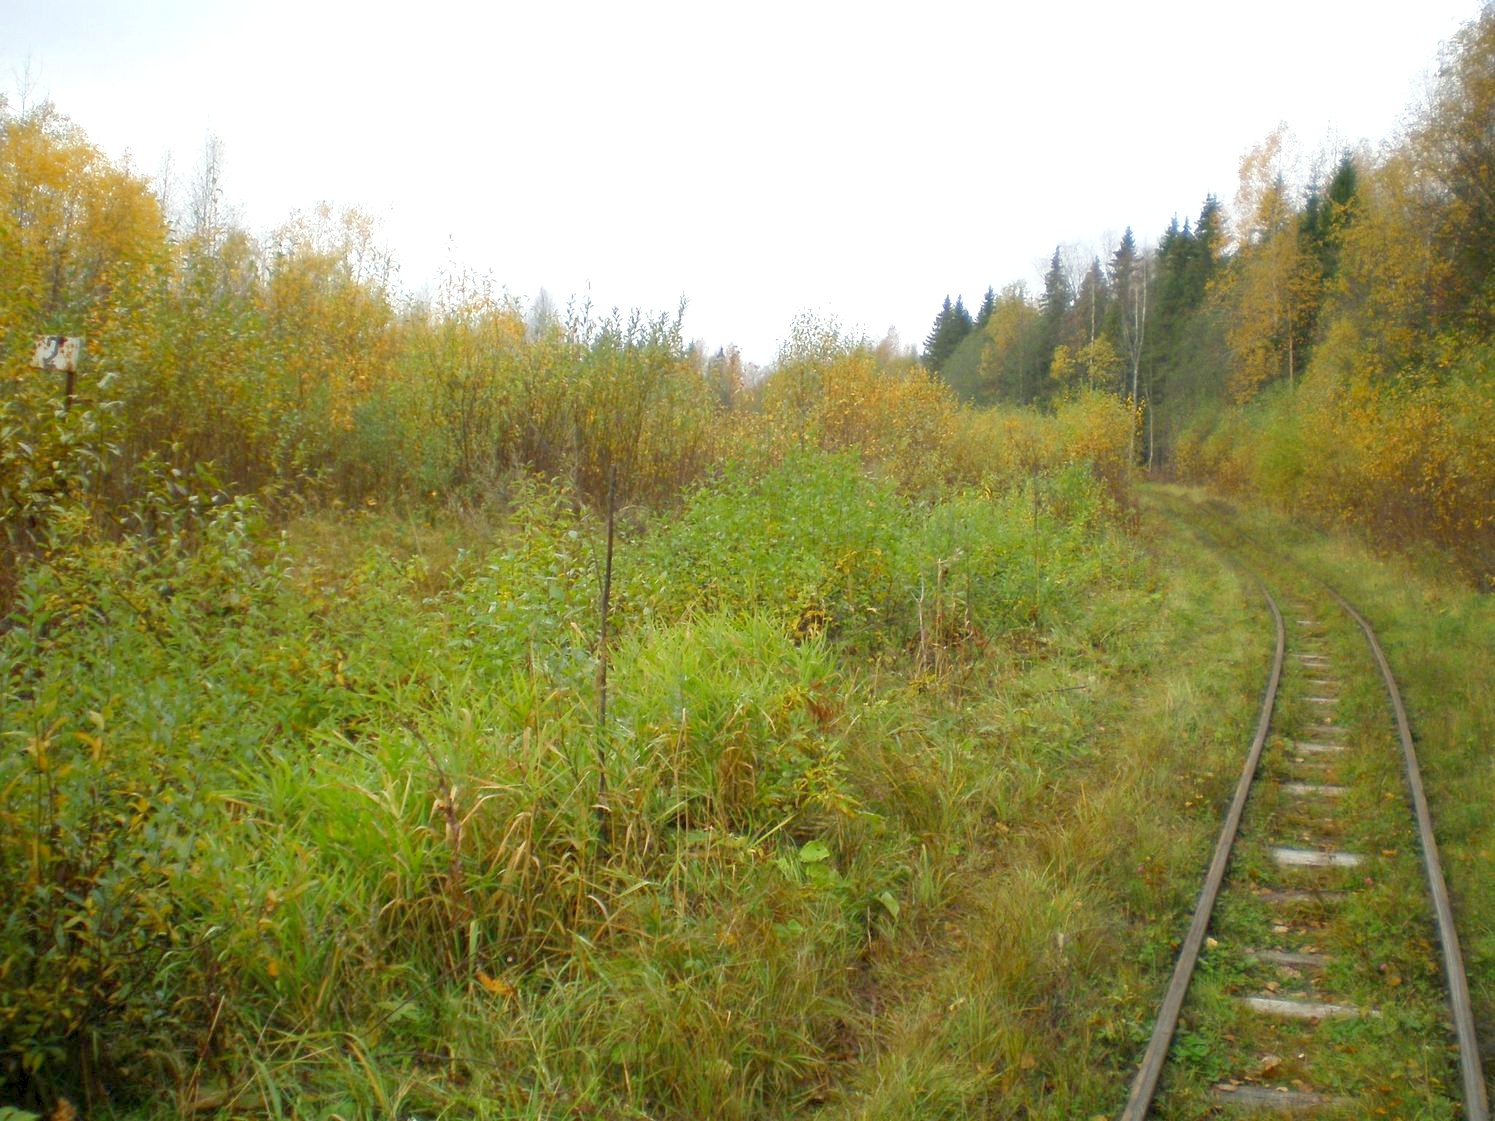 Лунданская узкоколейная железная дорога  —  фотографии, сделанные в 2007 году (часть 7)